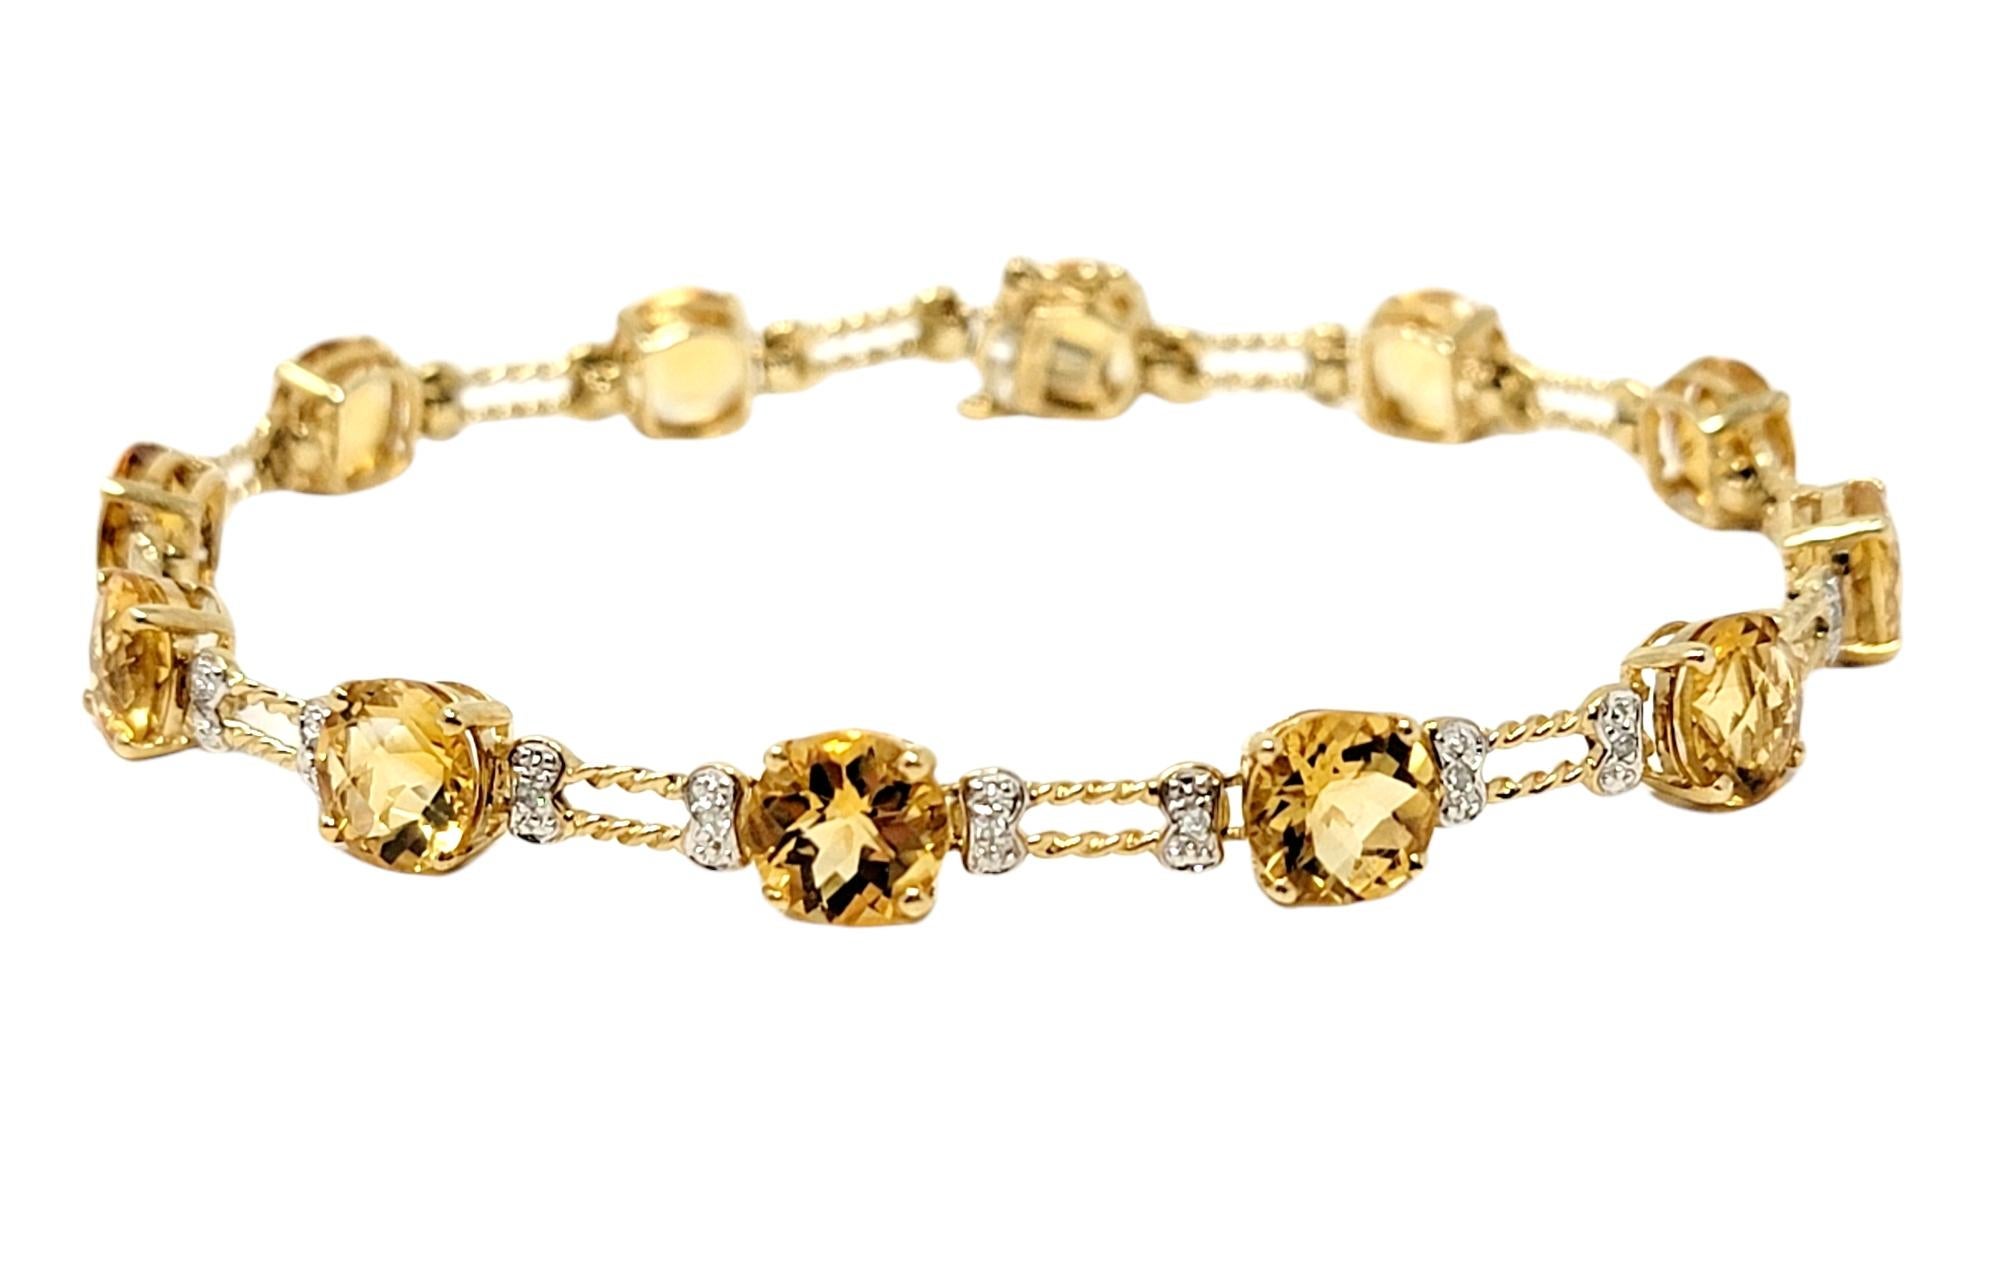 Très beau bracelet ligne en citrine et diamants. Les chaudes teintes dorées des pierres jaune vif et de l'or jaune poli rayonnent sur le poignet, tandis que les diamants blancs glacés scintillent magnifiquement à la lumière. 

Métal : Or jaune 10